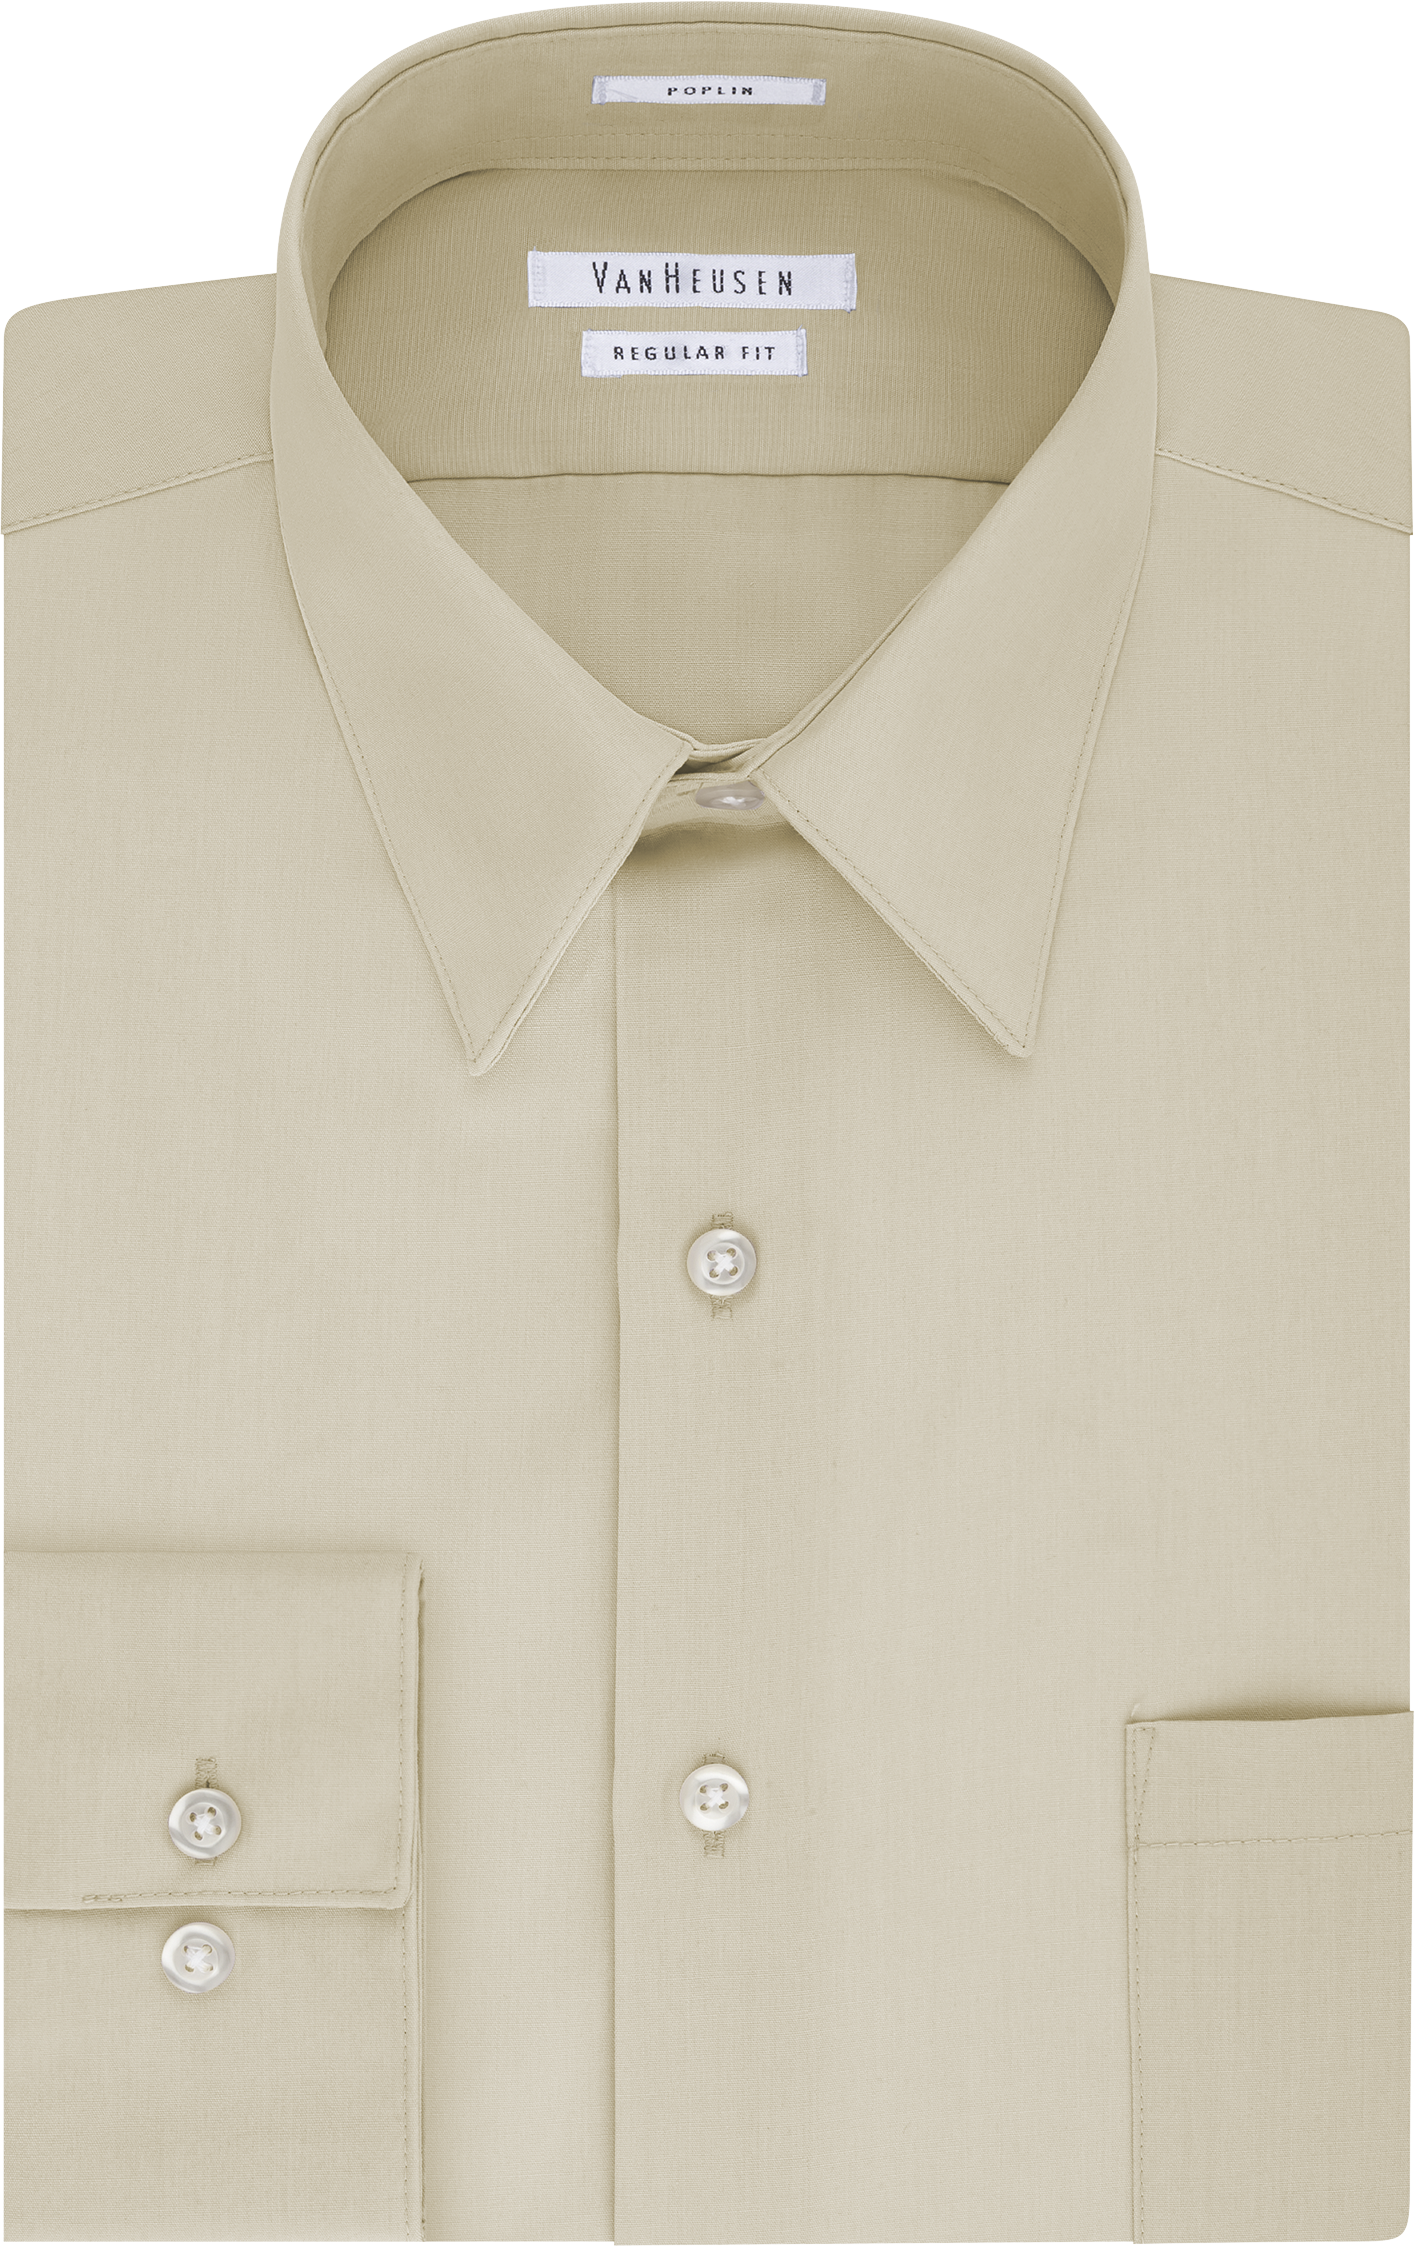 Van Heusen Wrinkle Free Stone Regular Fit Dress Shirt - Men's Shirts ...